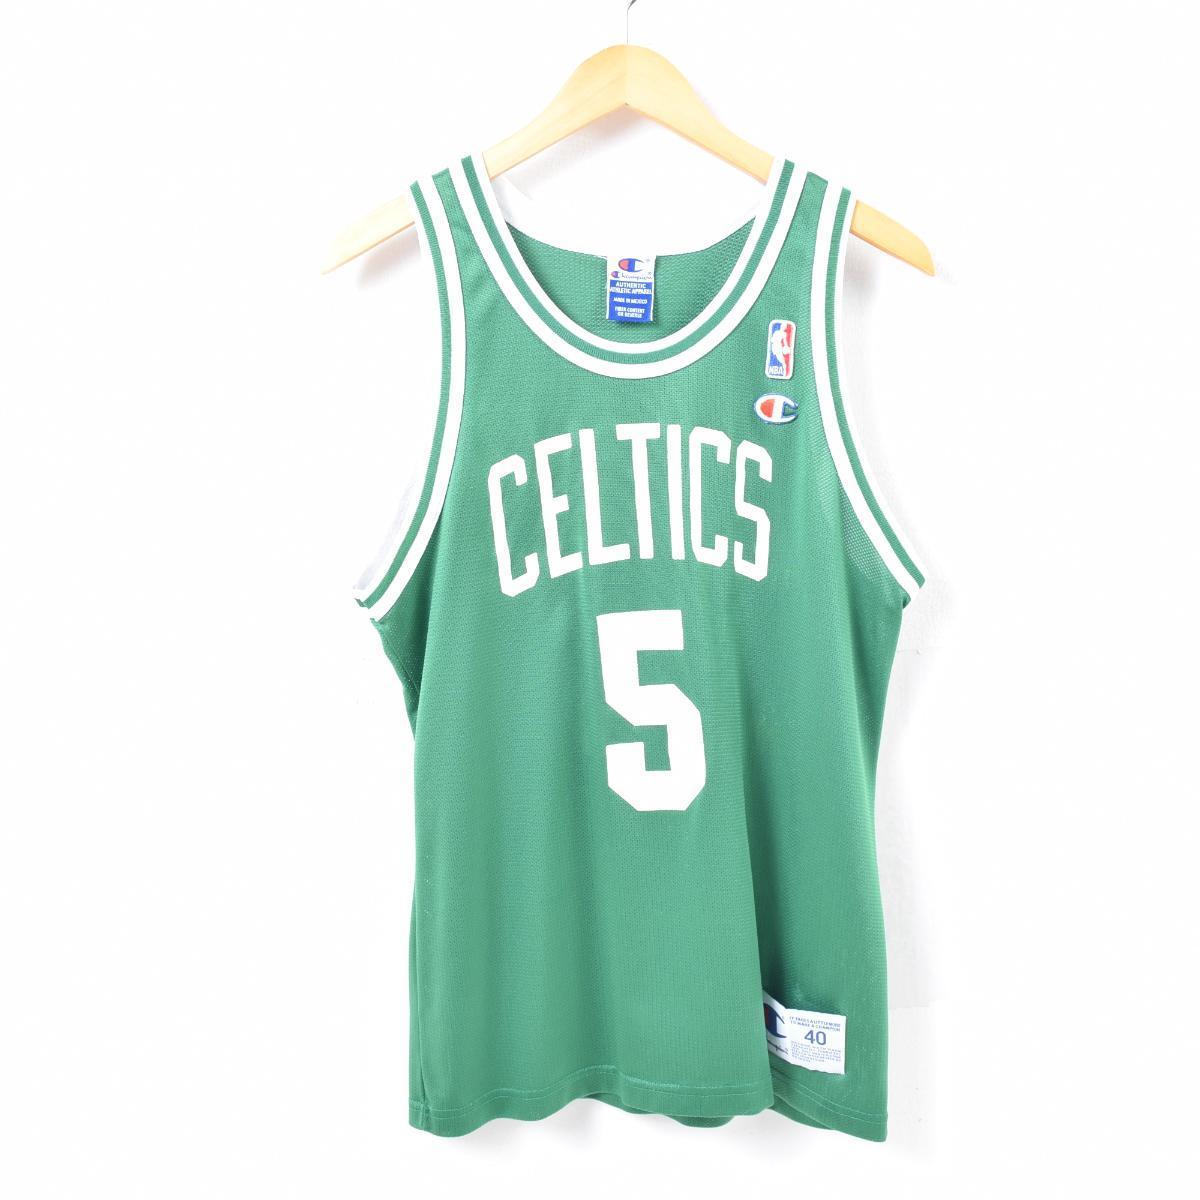 90年代 チャンピオン Champion Nba Boston Celtics ボストンセルティックス ロン マーサー ゲームシャツ レプリカ ユニフォーム メンズs ヴィンテージ グラフィックtシャツ Was3062 中古 Cs01 Ss07 Cs07 Js10 Ss2101 Cs2101